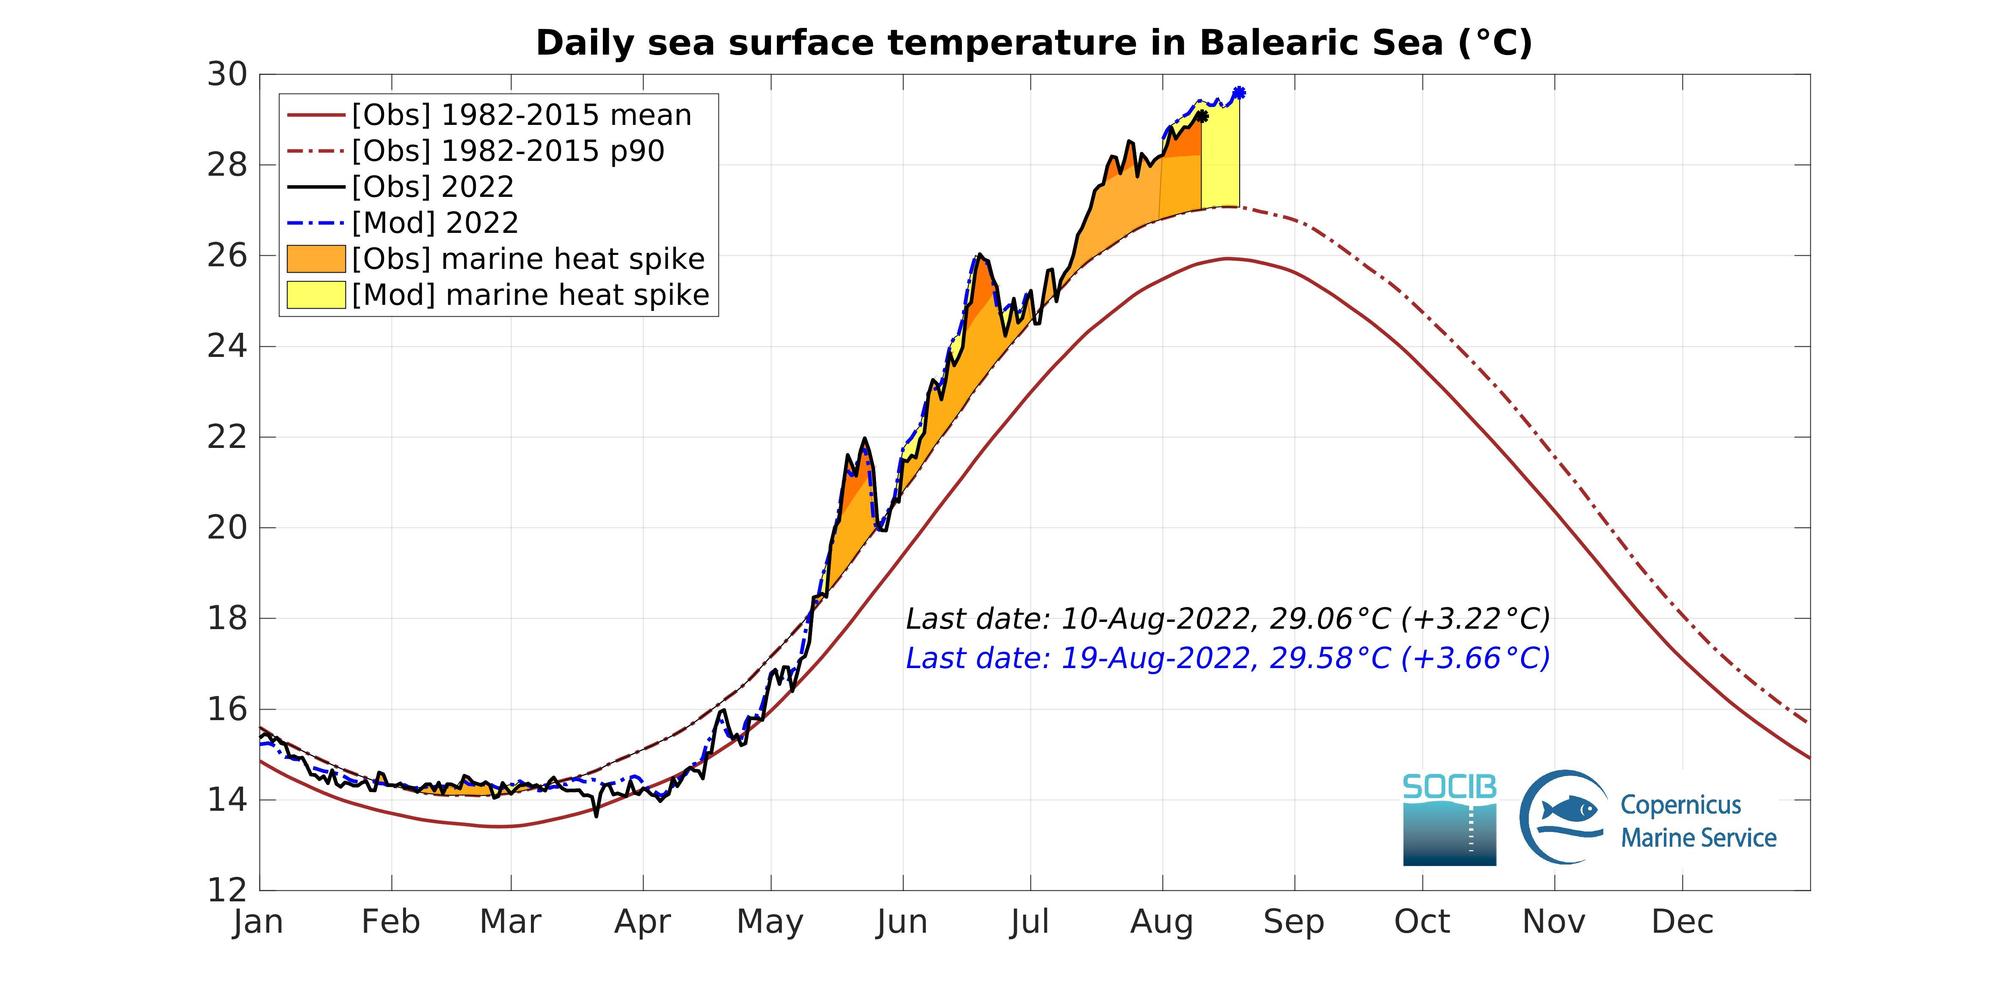 Gráfico del aumento de la temperatura del mar balear